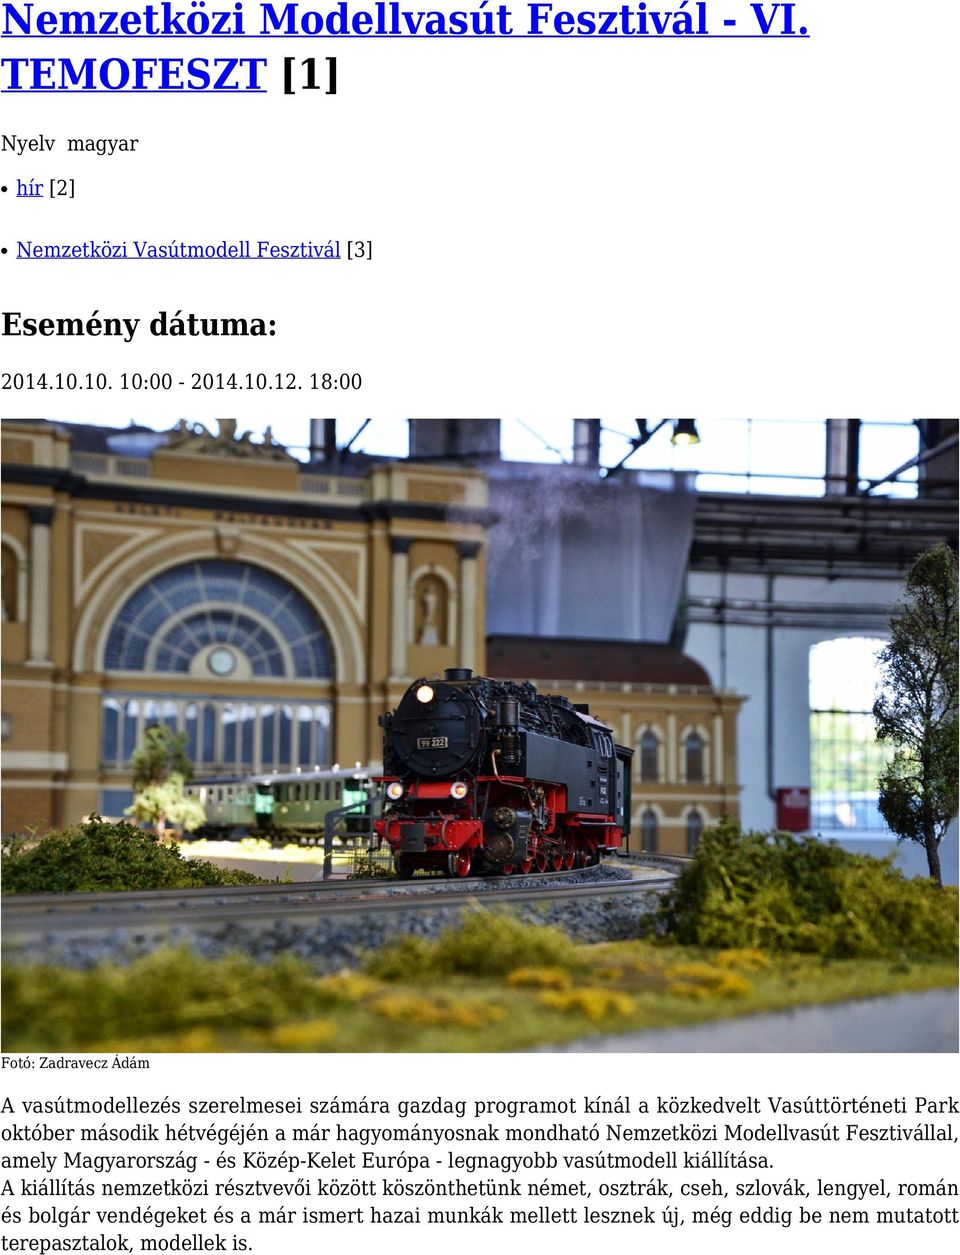 mondható Nemzetközi Modellvasút Fesztivállal, amely Magyarország - és Közép-Kelet Európa - legnagyobb vasútmodell kiállítása.